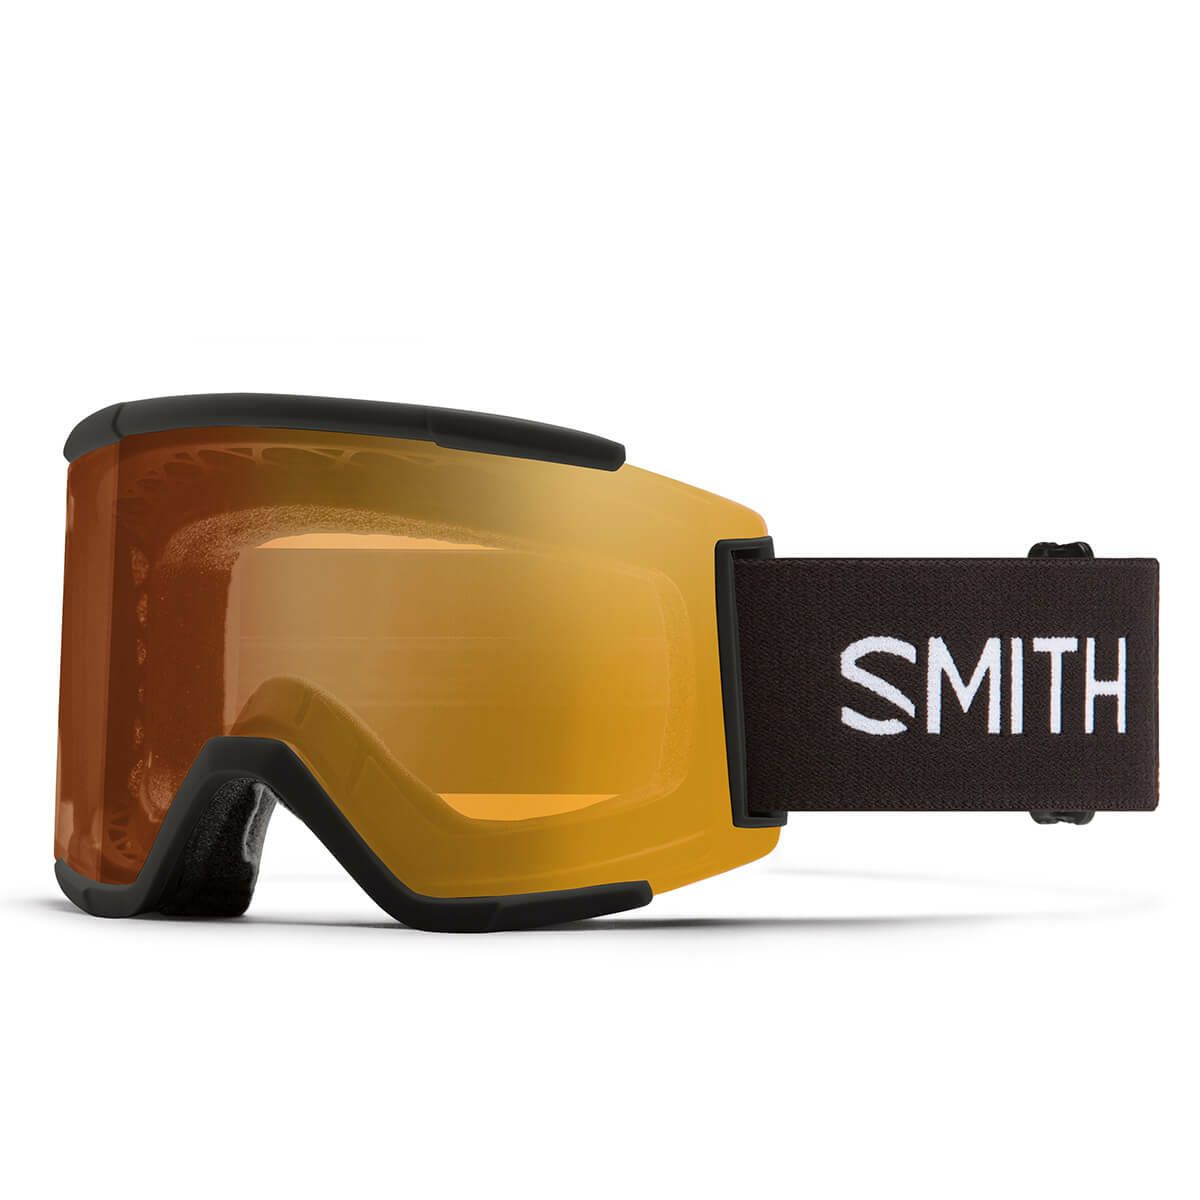 スキー スノボー用ゴーグル スミス squad xl 調光の人気商品・通販 